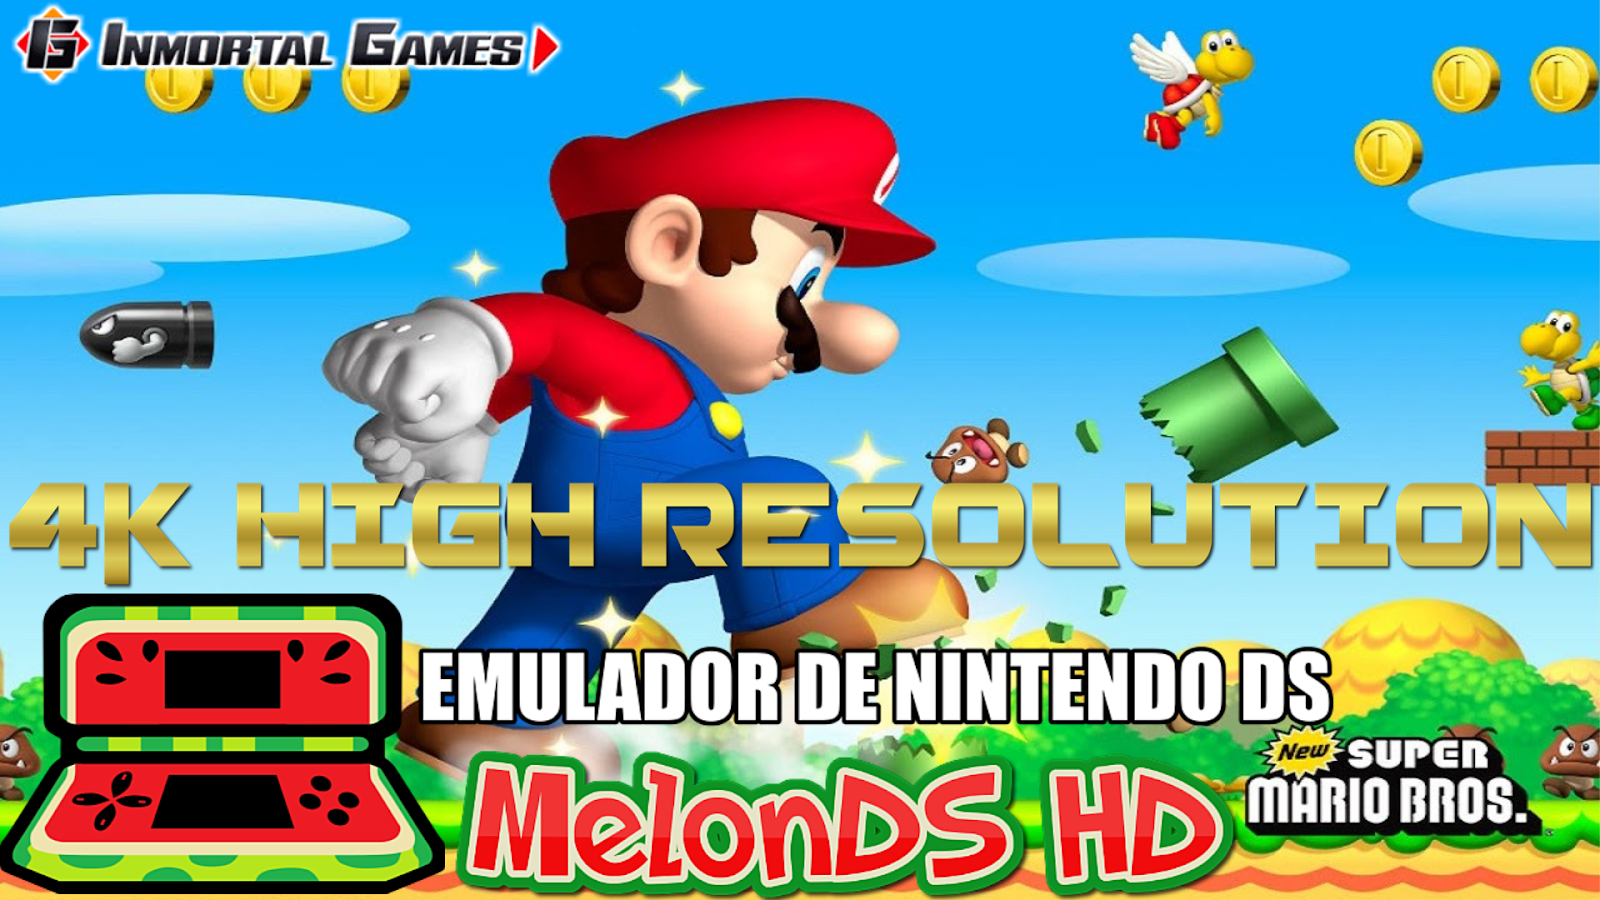 O melhor emulador de Nintendo DS ainda melhor - MelonDS 0.9.4 lançado 